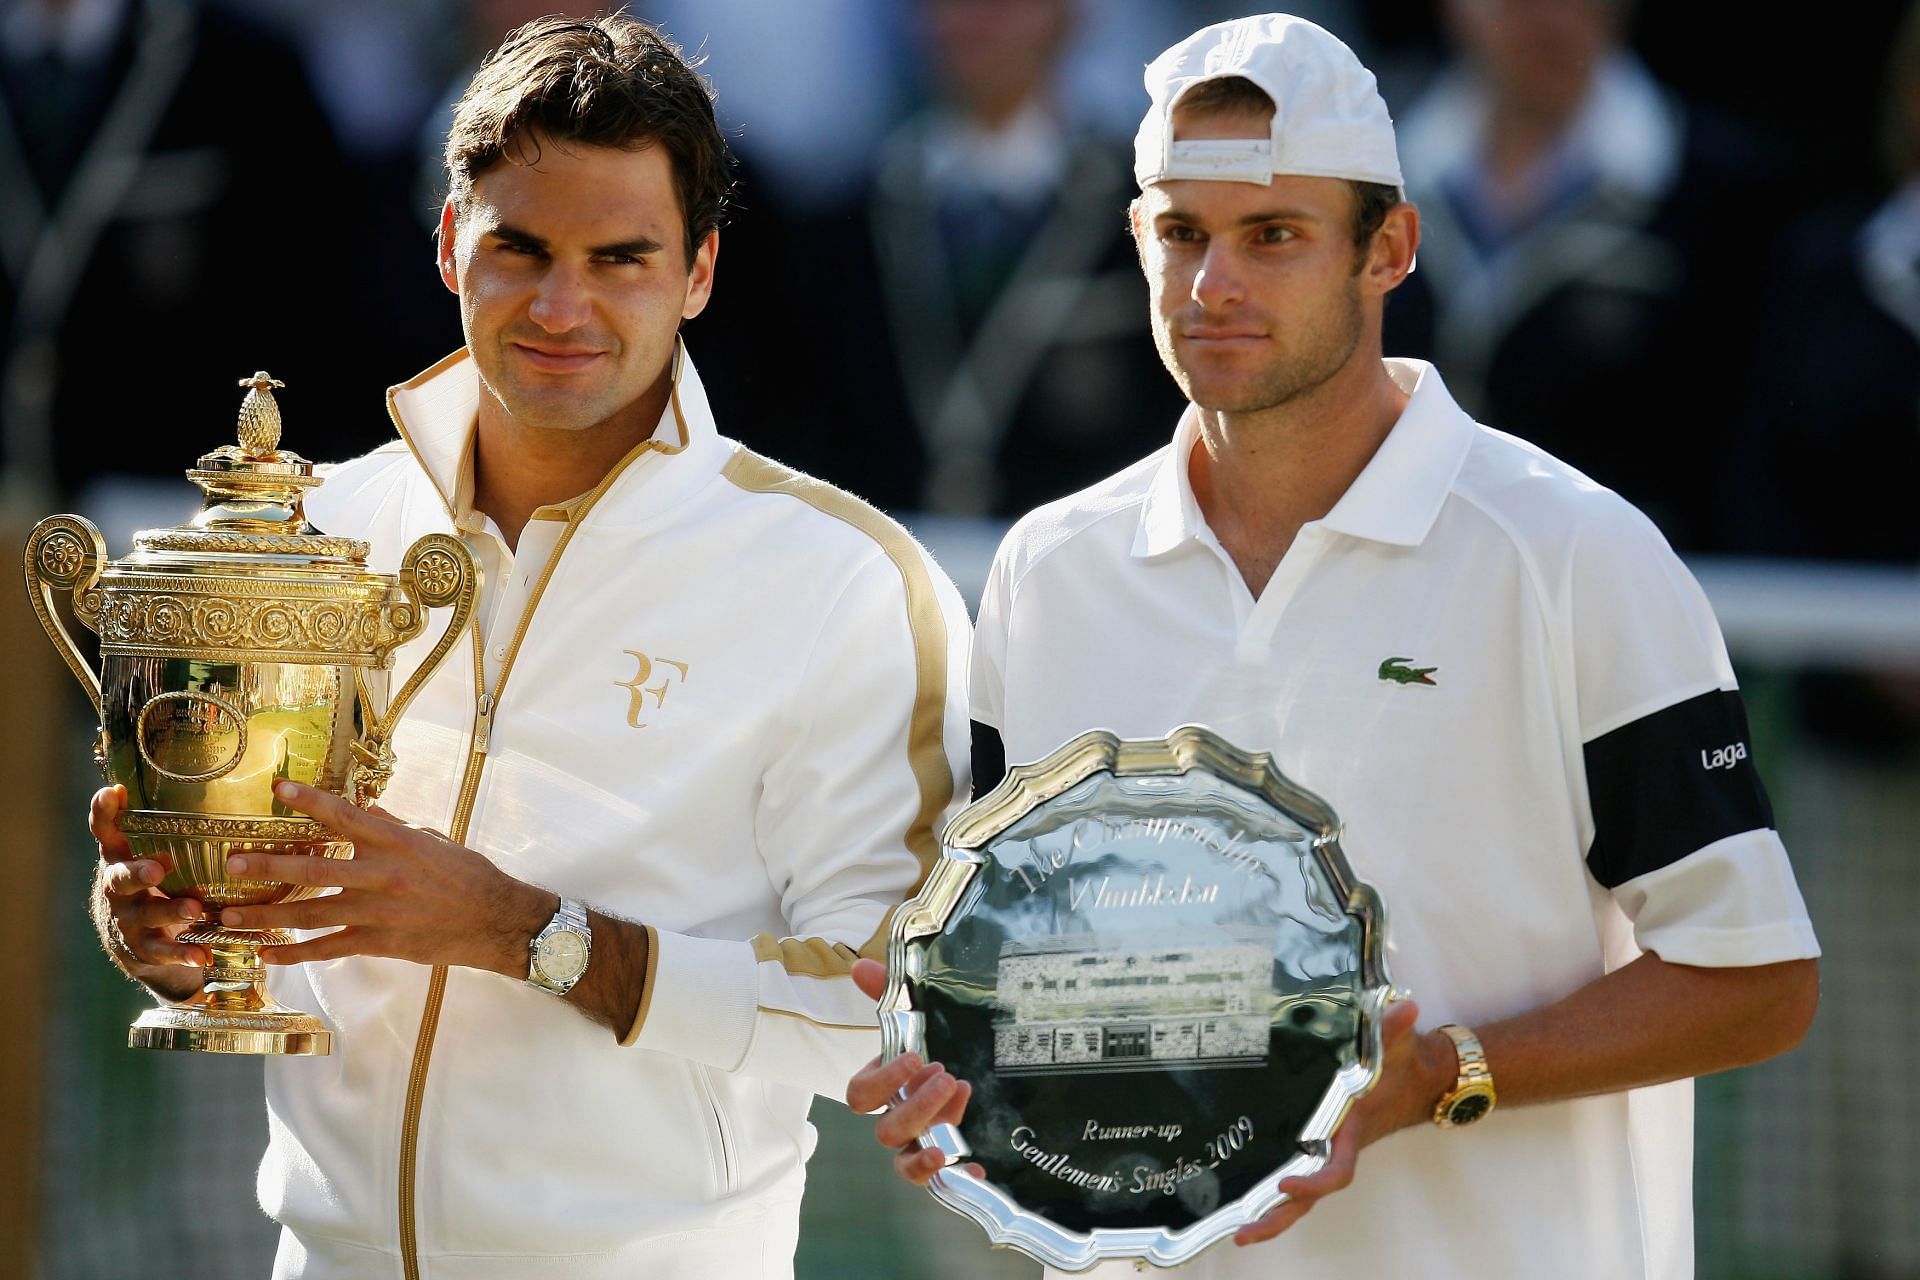 Federer (left) and Roddick